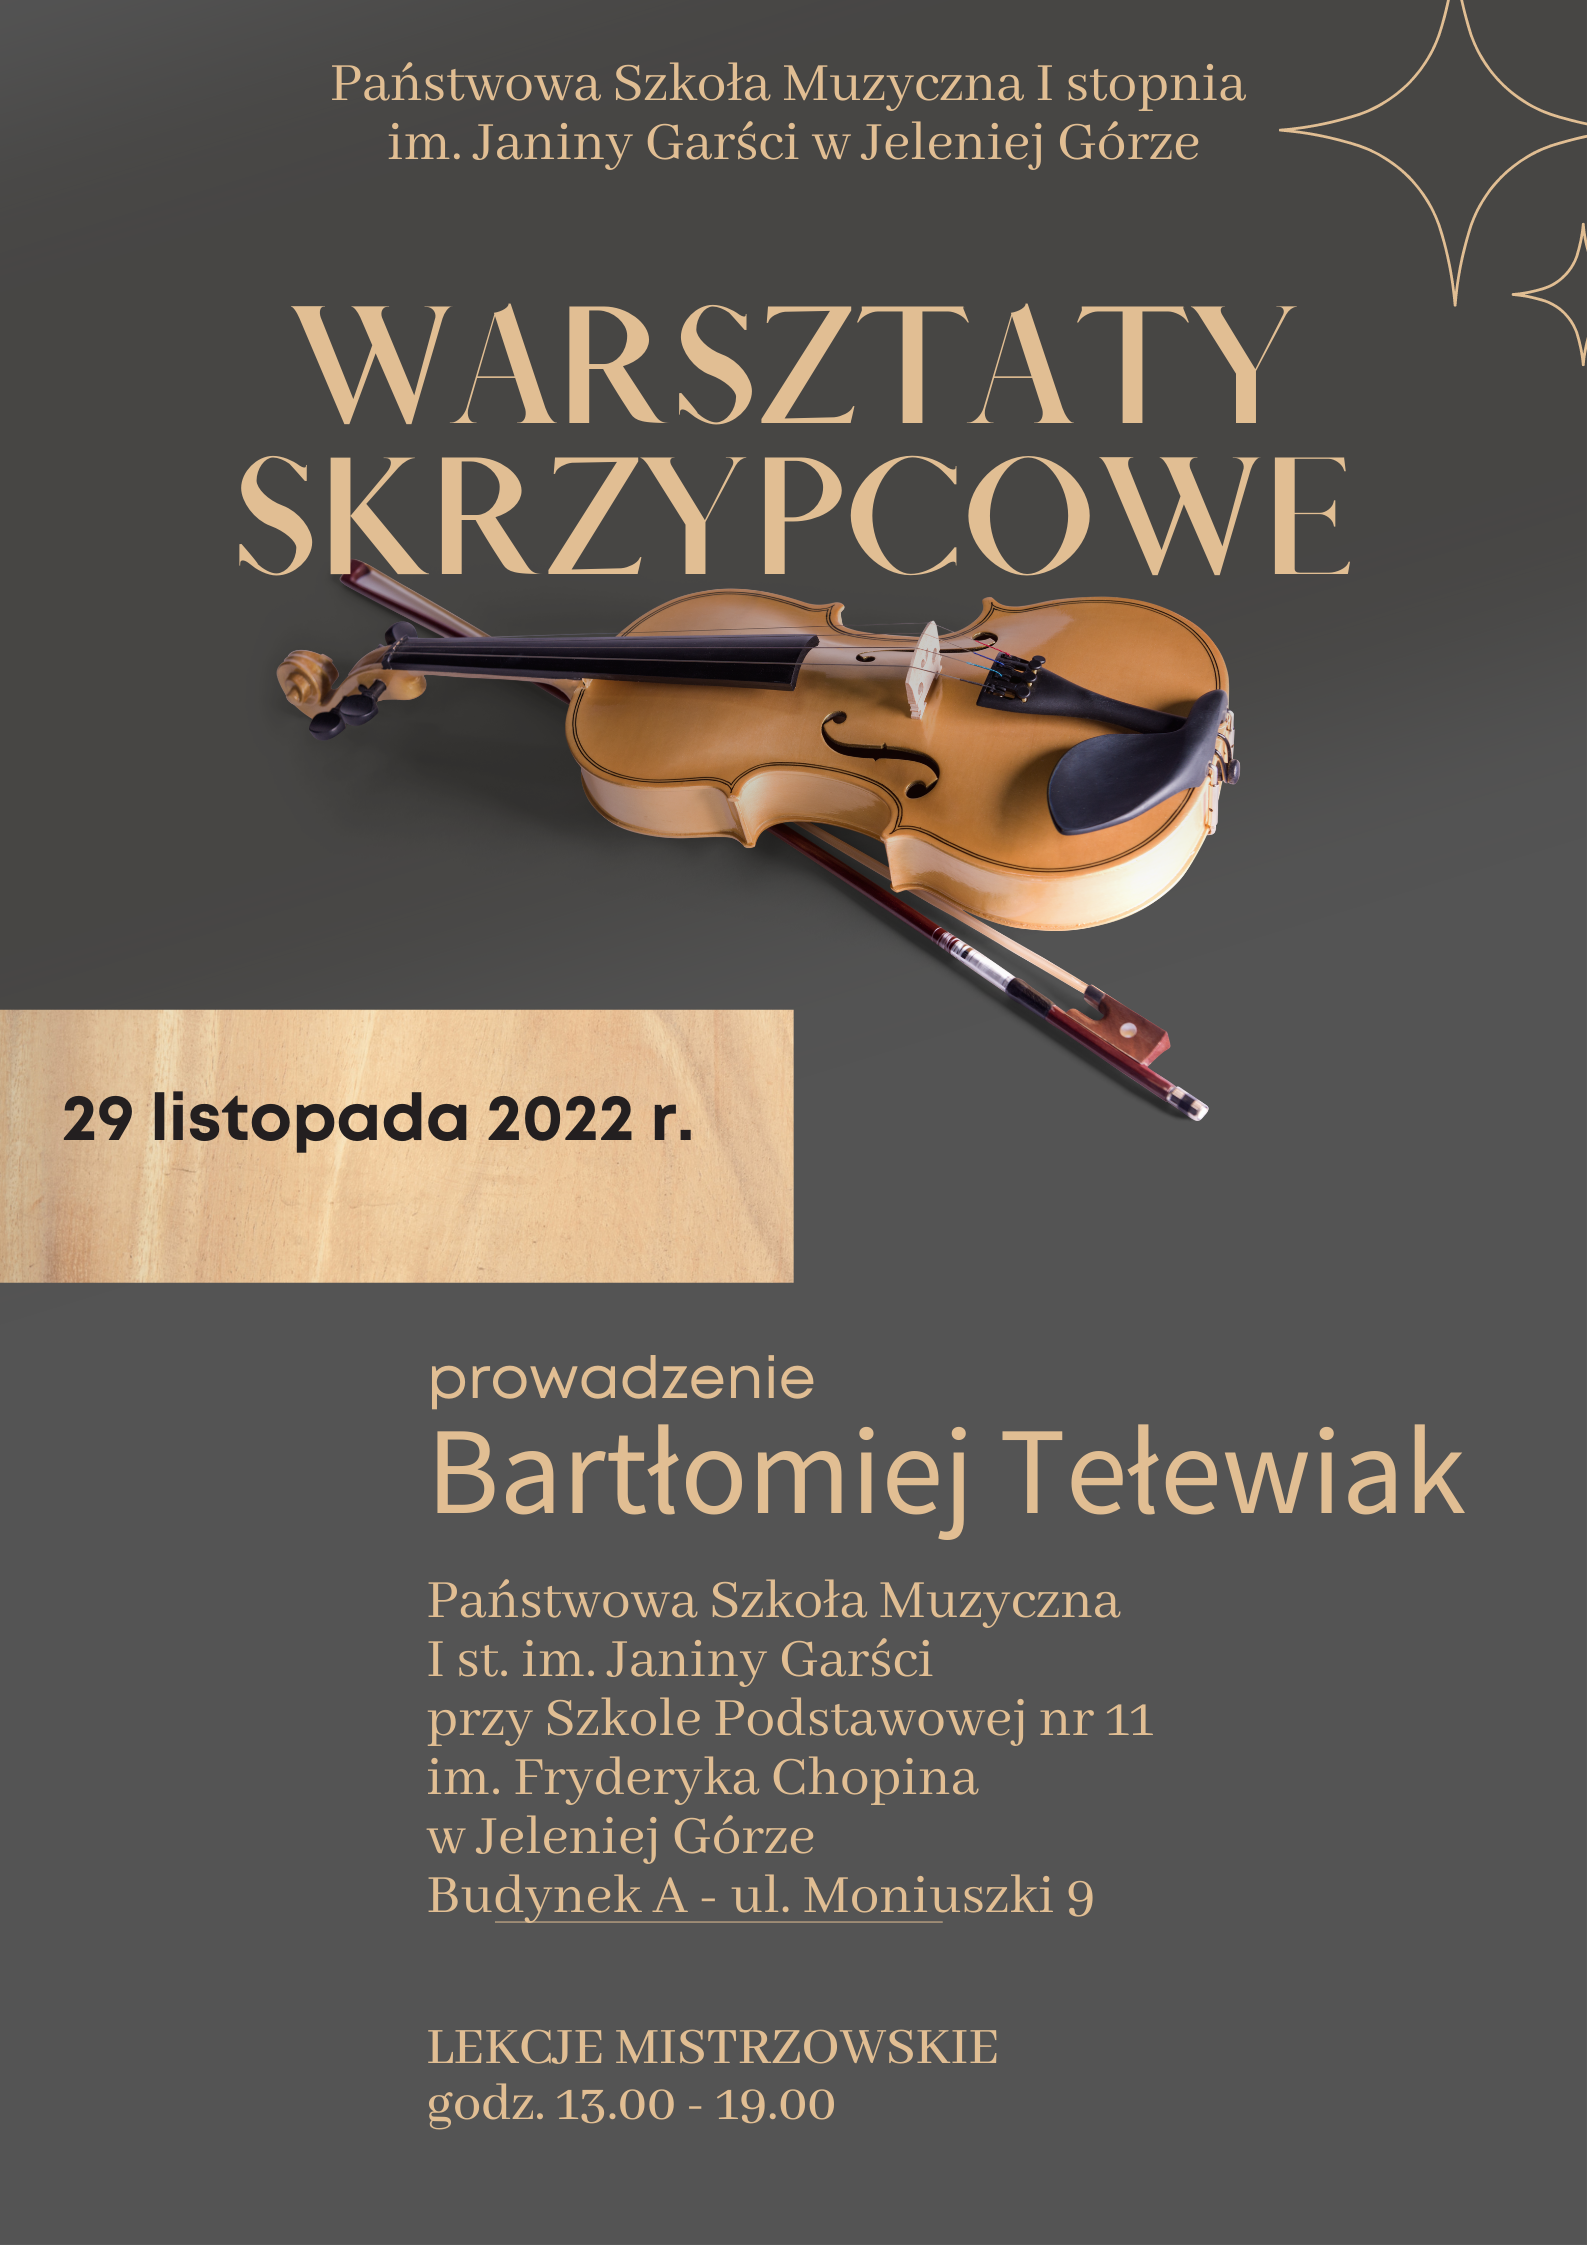 Plakat reklamujący warsztaty skrzypcowe odbywające się w PSM I st. im. J. Garści w dniu 29 listopada 2022 r.